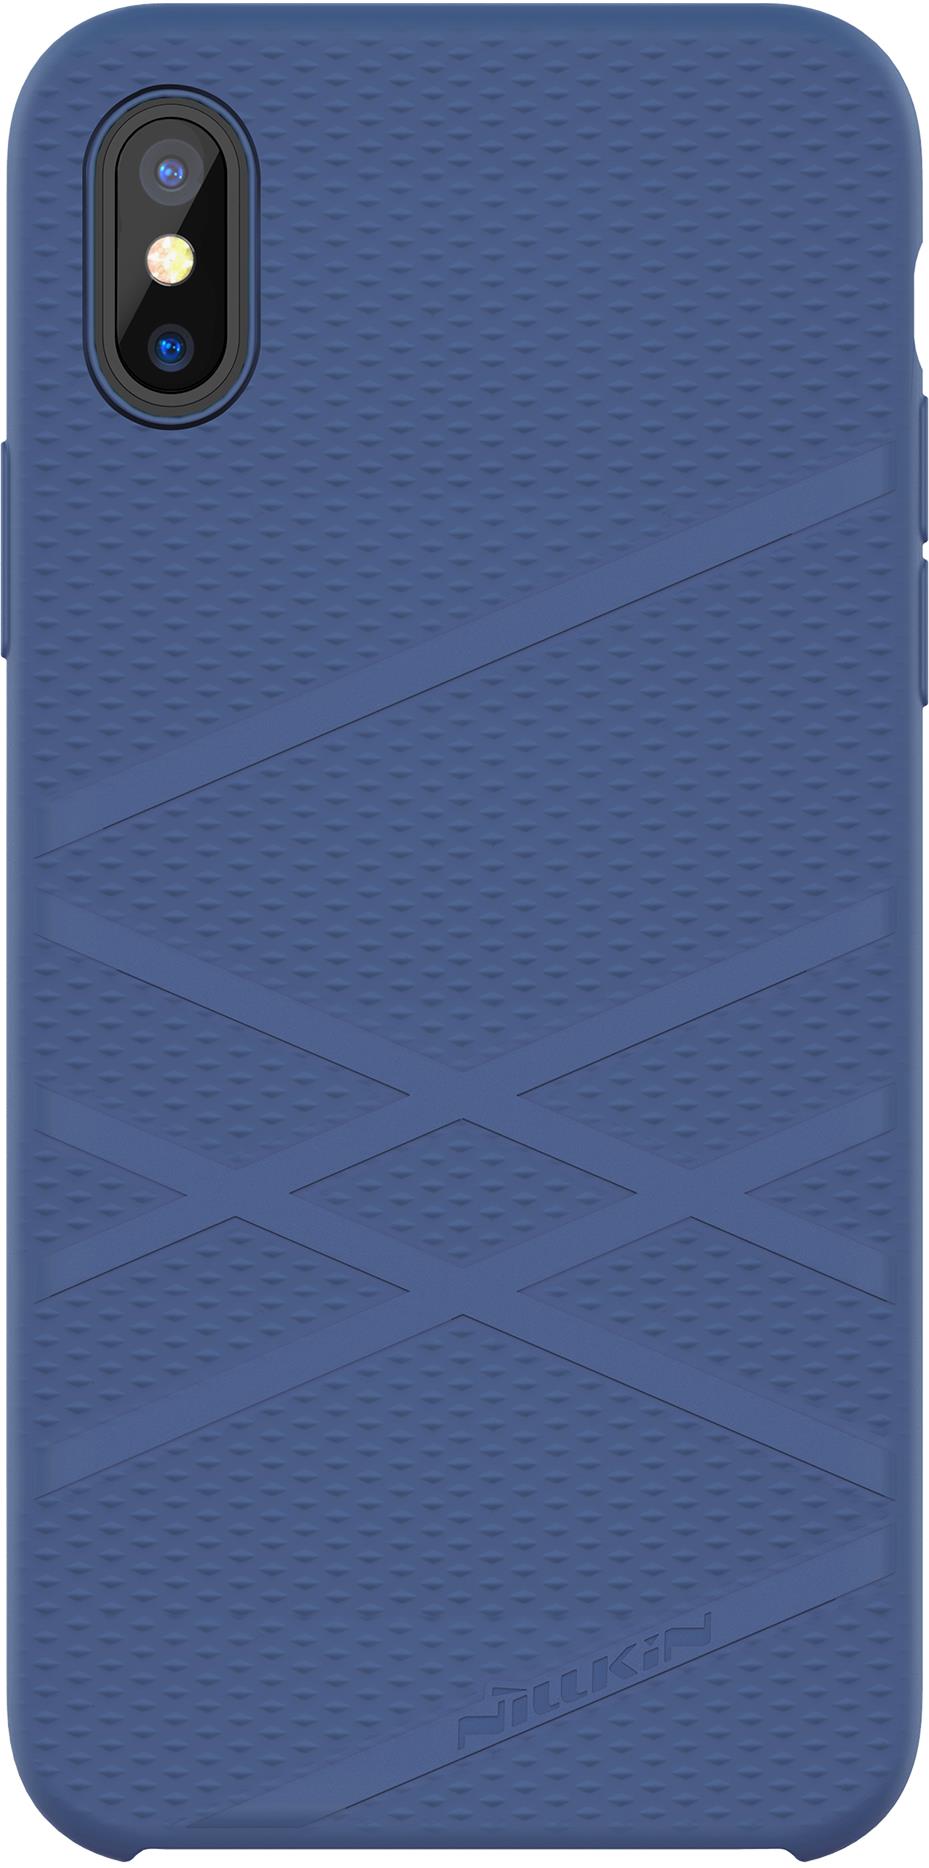 Чехол для сотового телефона Nillkin Flex Case, 6902048146211, синий